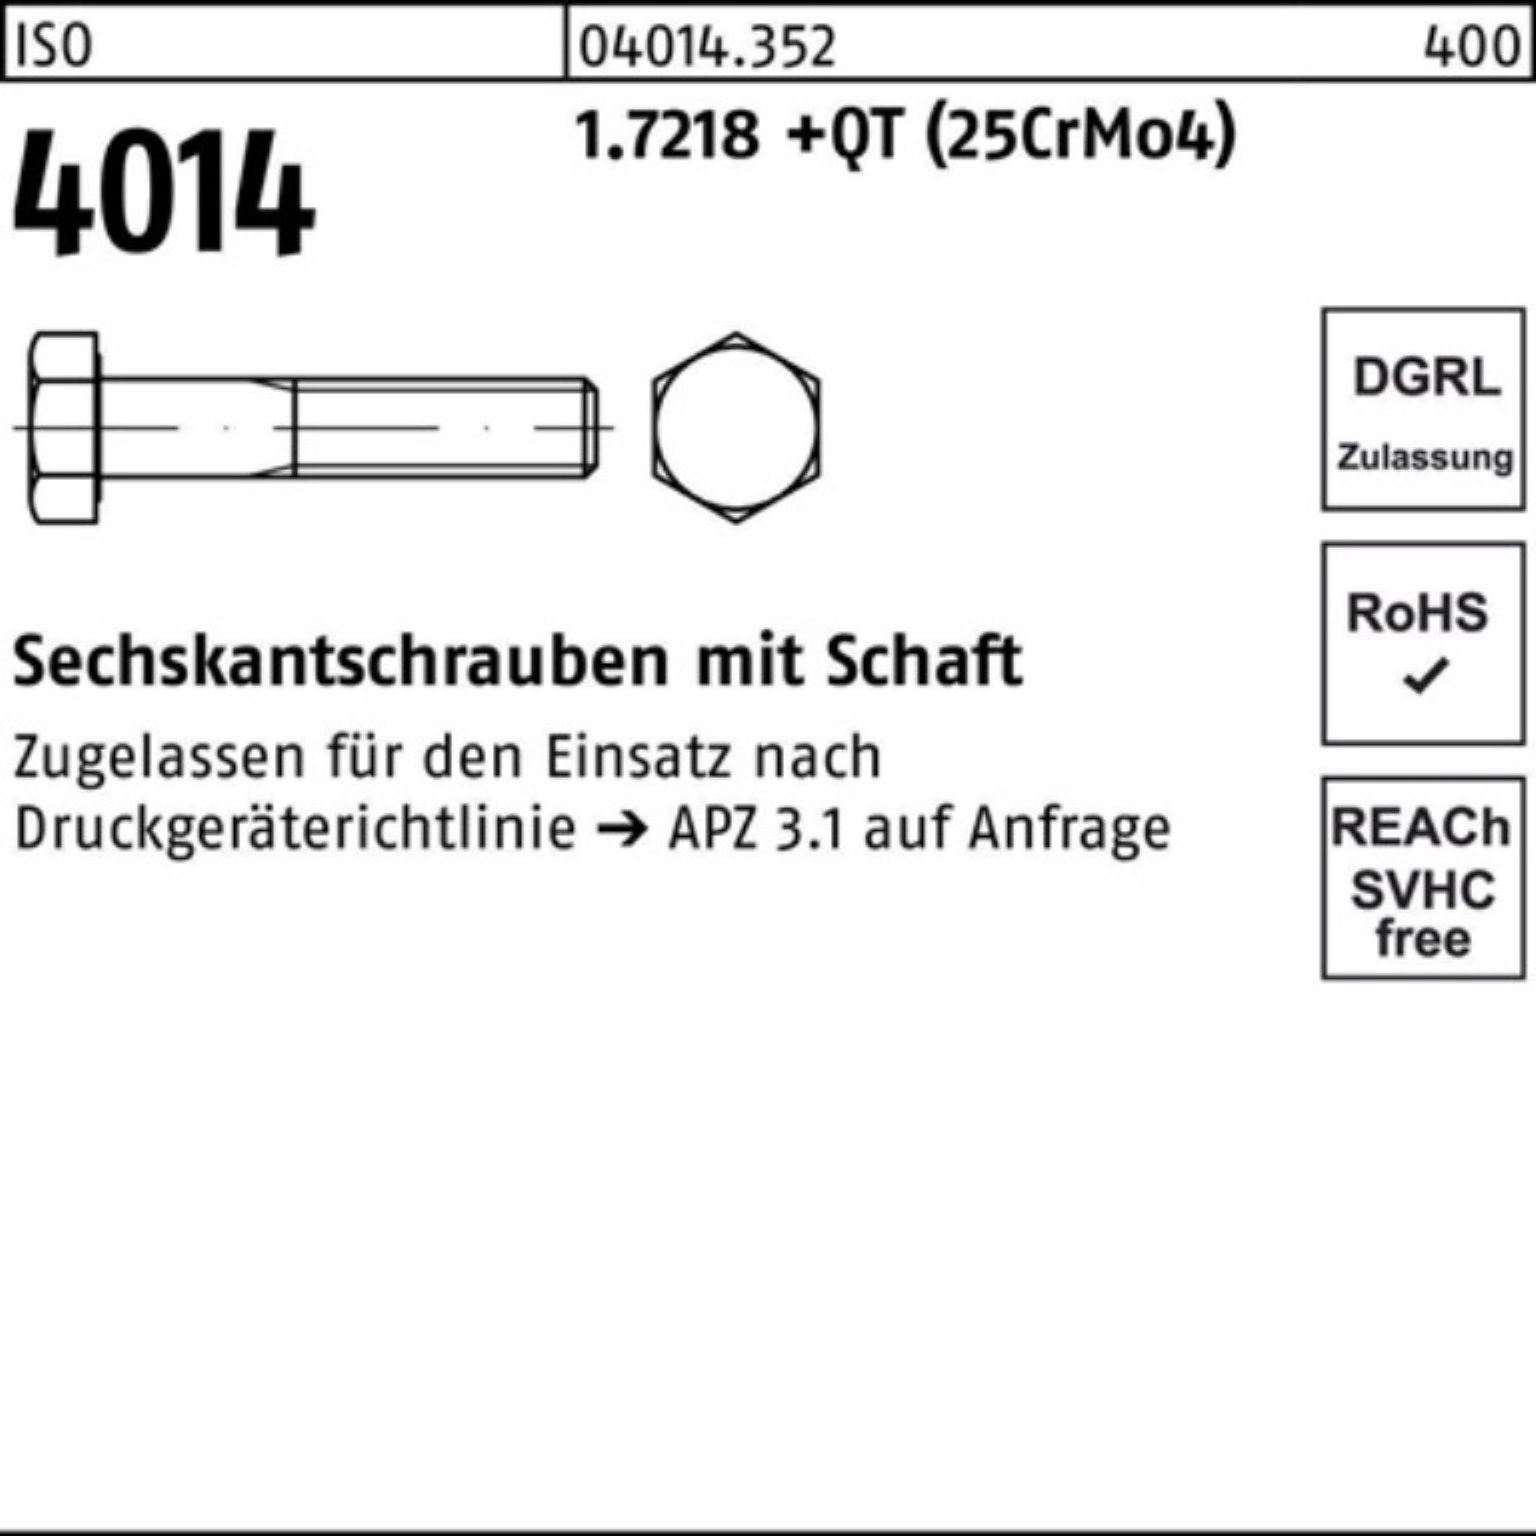 M27x Sechskantschraube Sechskantschraube +QT 4014 Schaft 100er ISO (25Cr 200 Pack 1.7218 Bufab